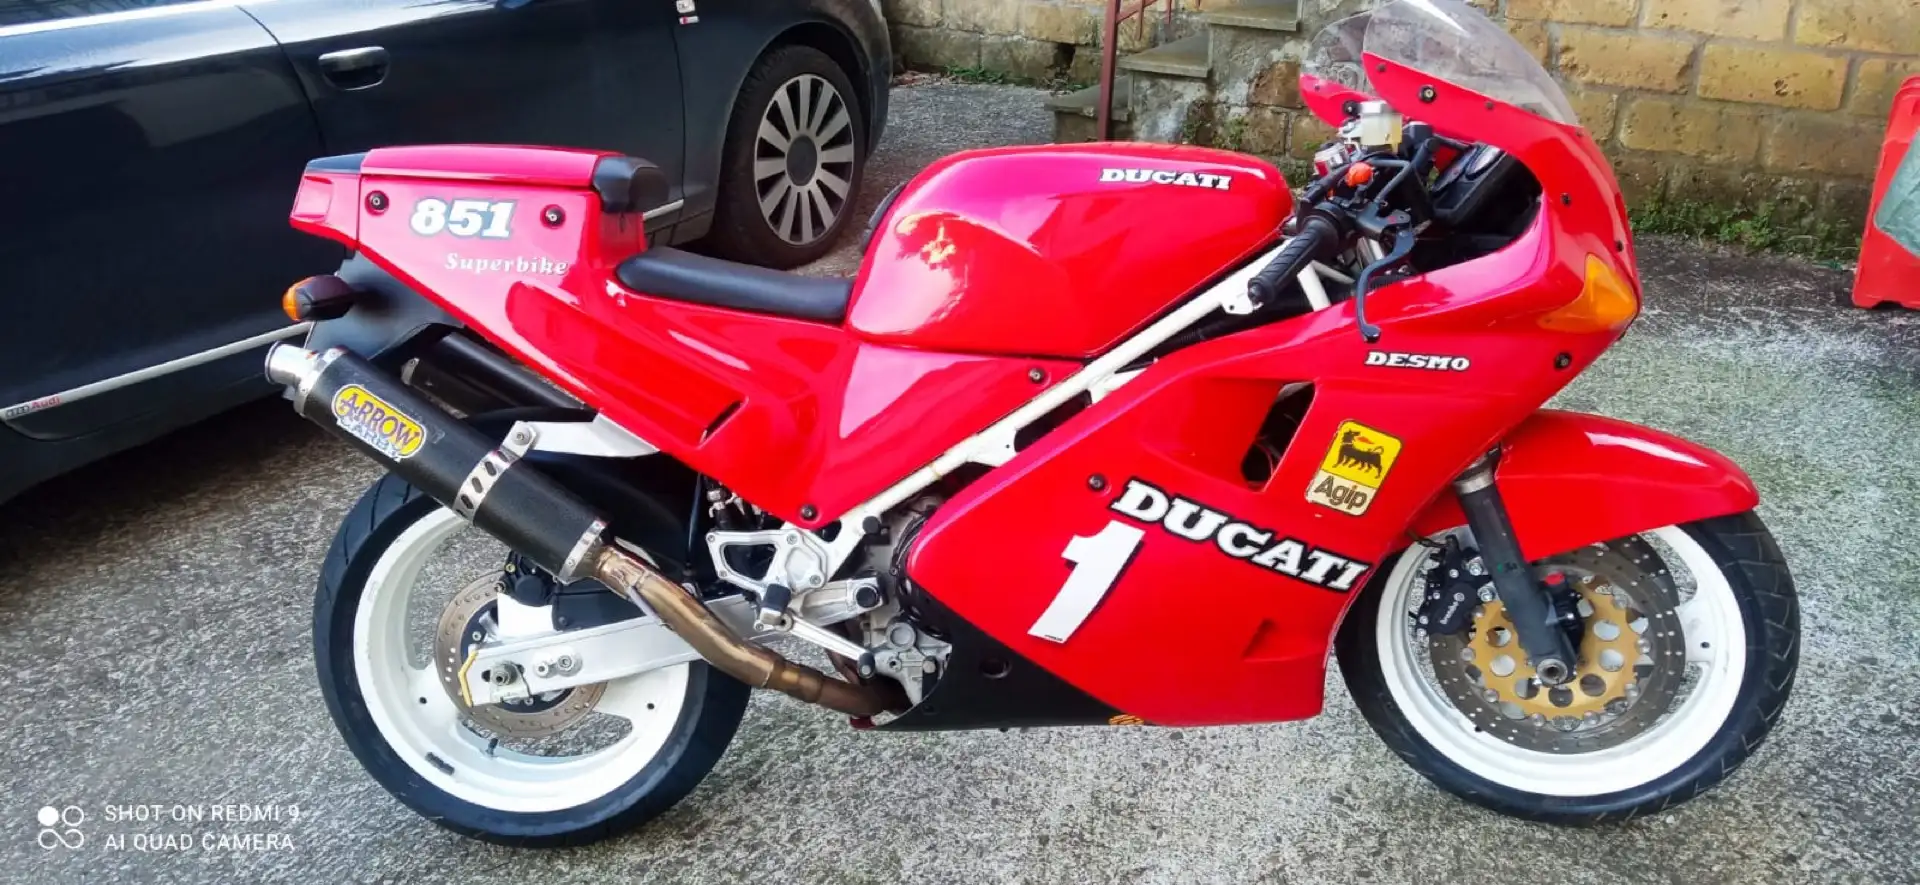 Ducati 851 superbike Kırmızı - 2